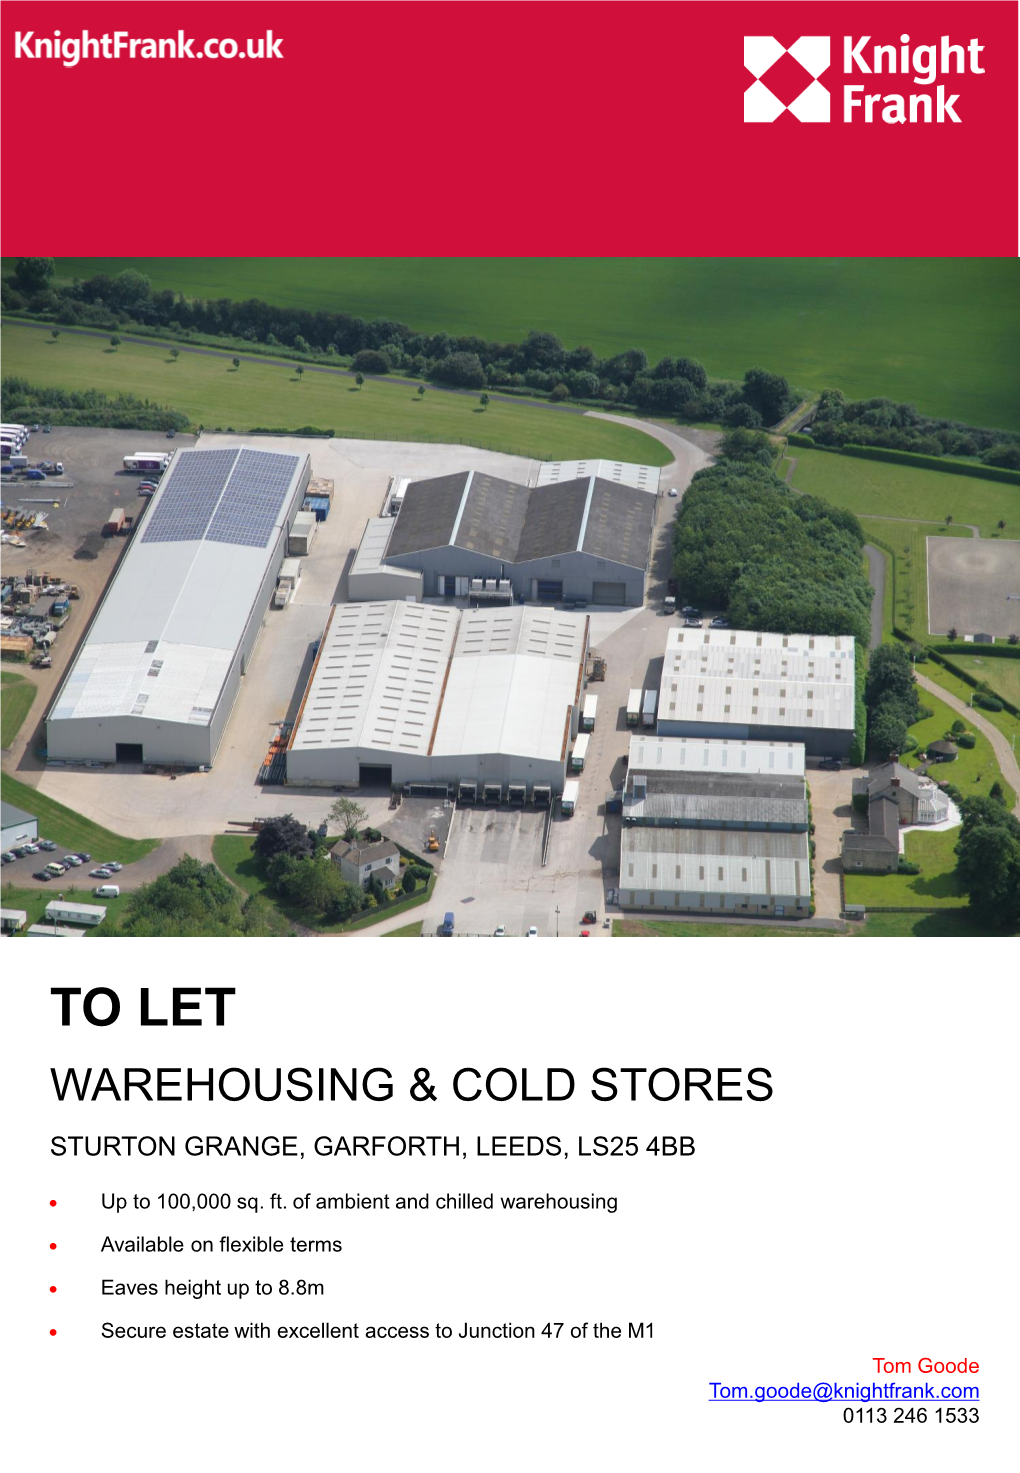 To Let Warehousing & Cold Stores Sturton Grange, Garforth, Leeds, Ls25 4Bb